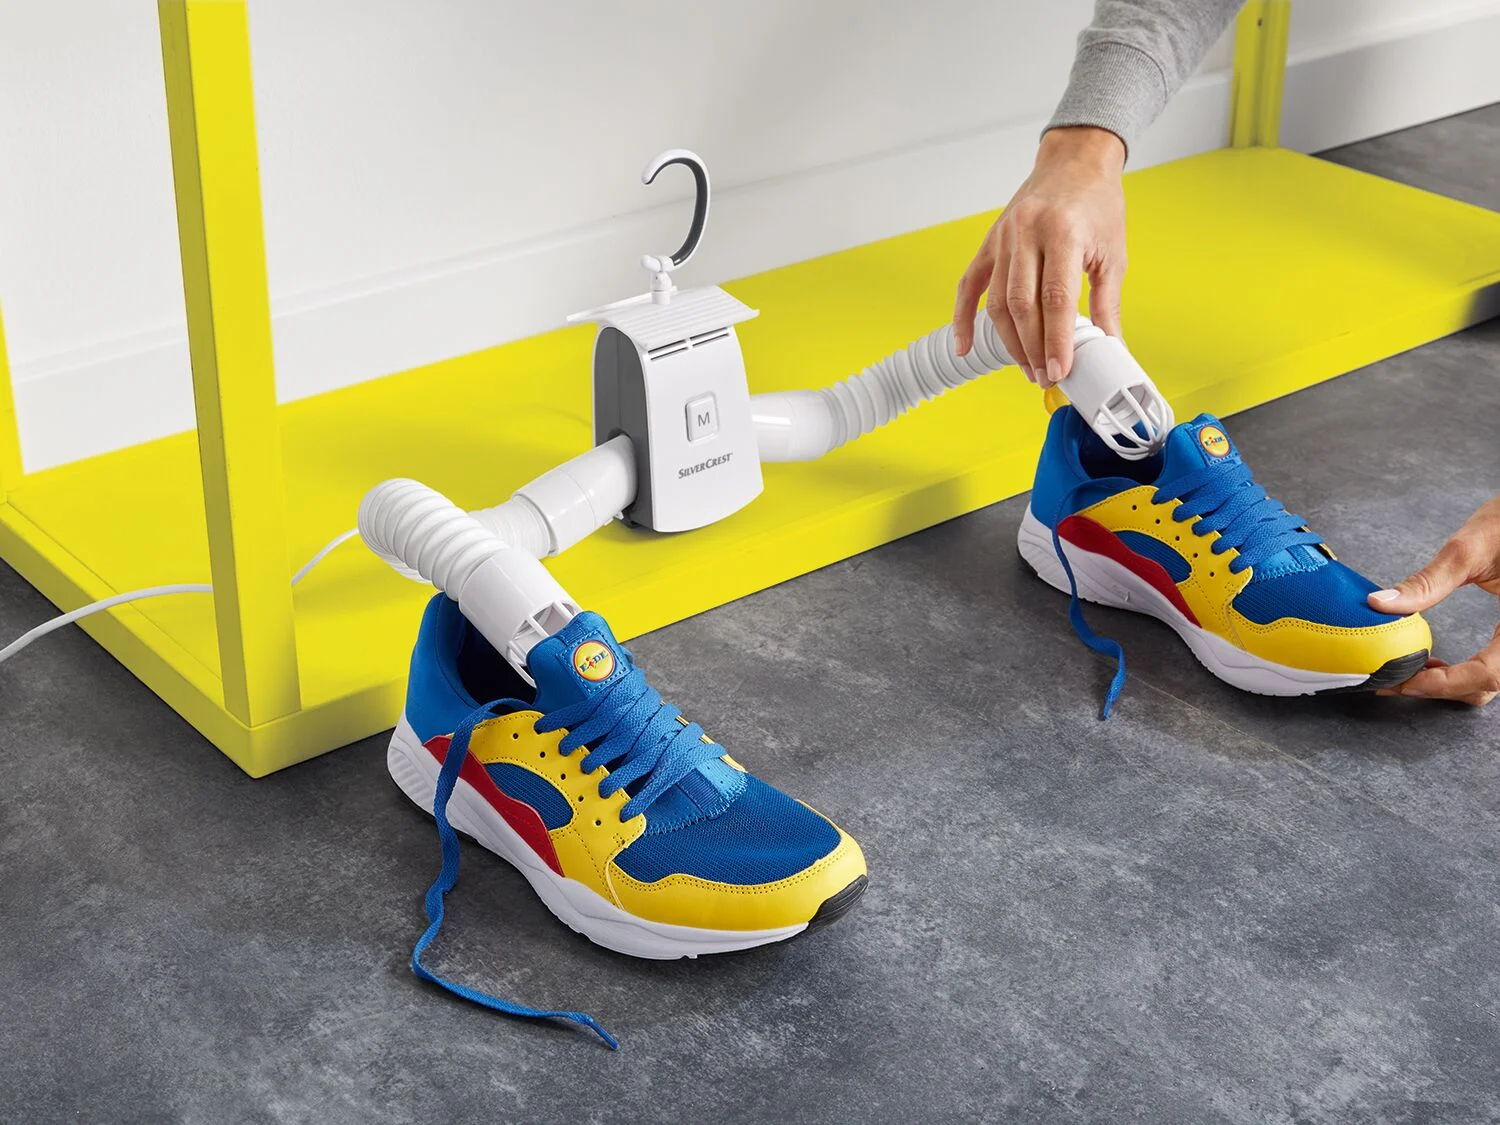 El gadget de Lidl que seca ropa y zapatos por solo 14,99 euros